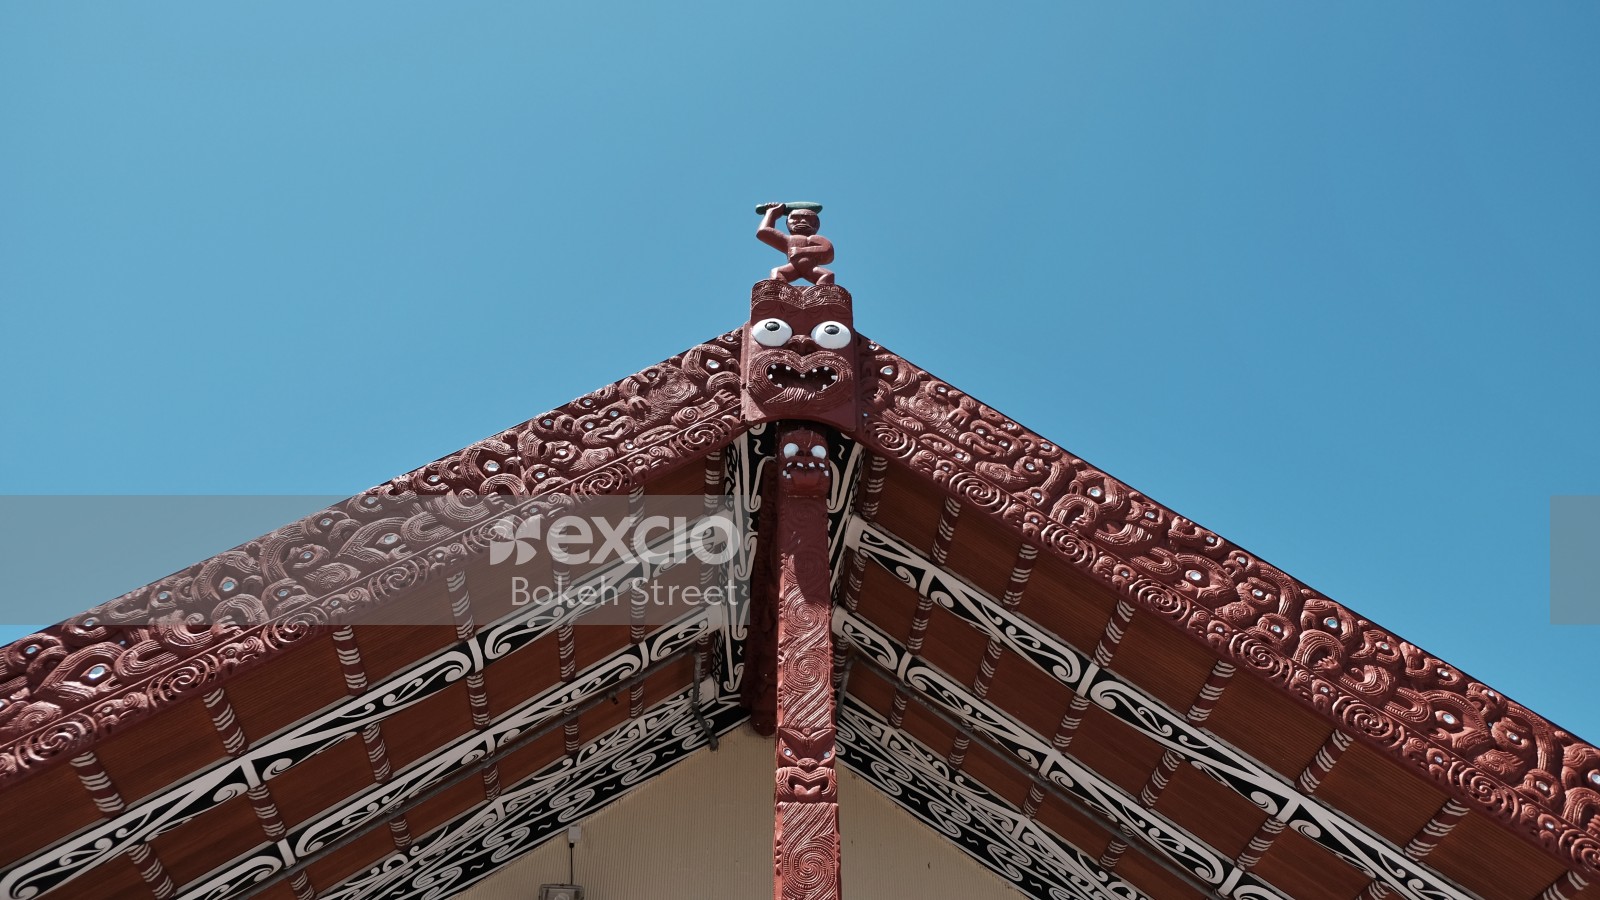 Maori carving and architecture at Whakarewarewa